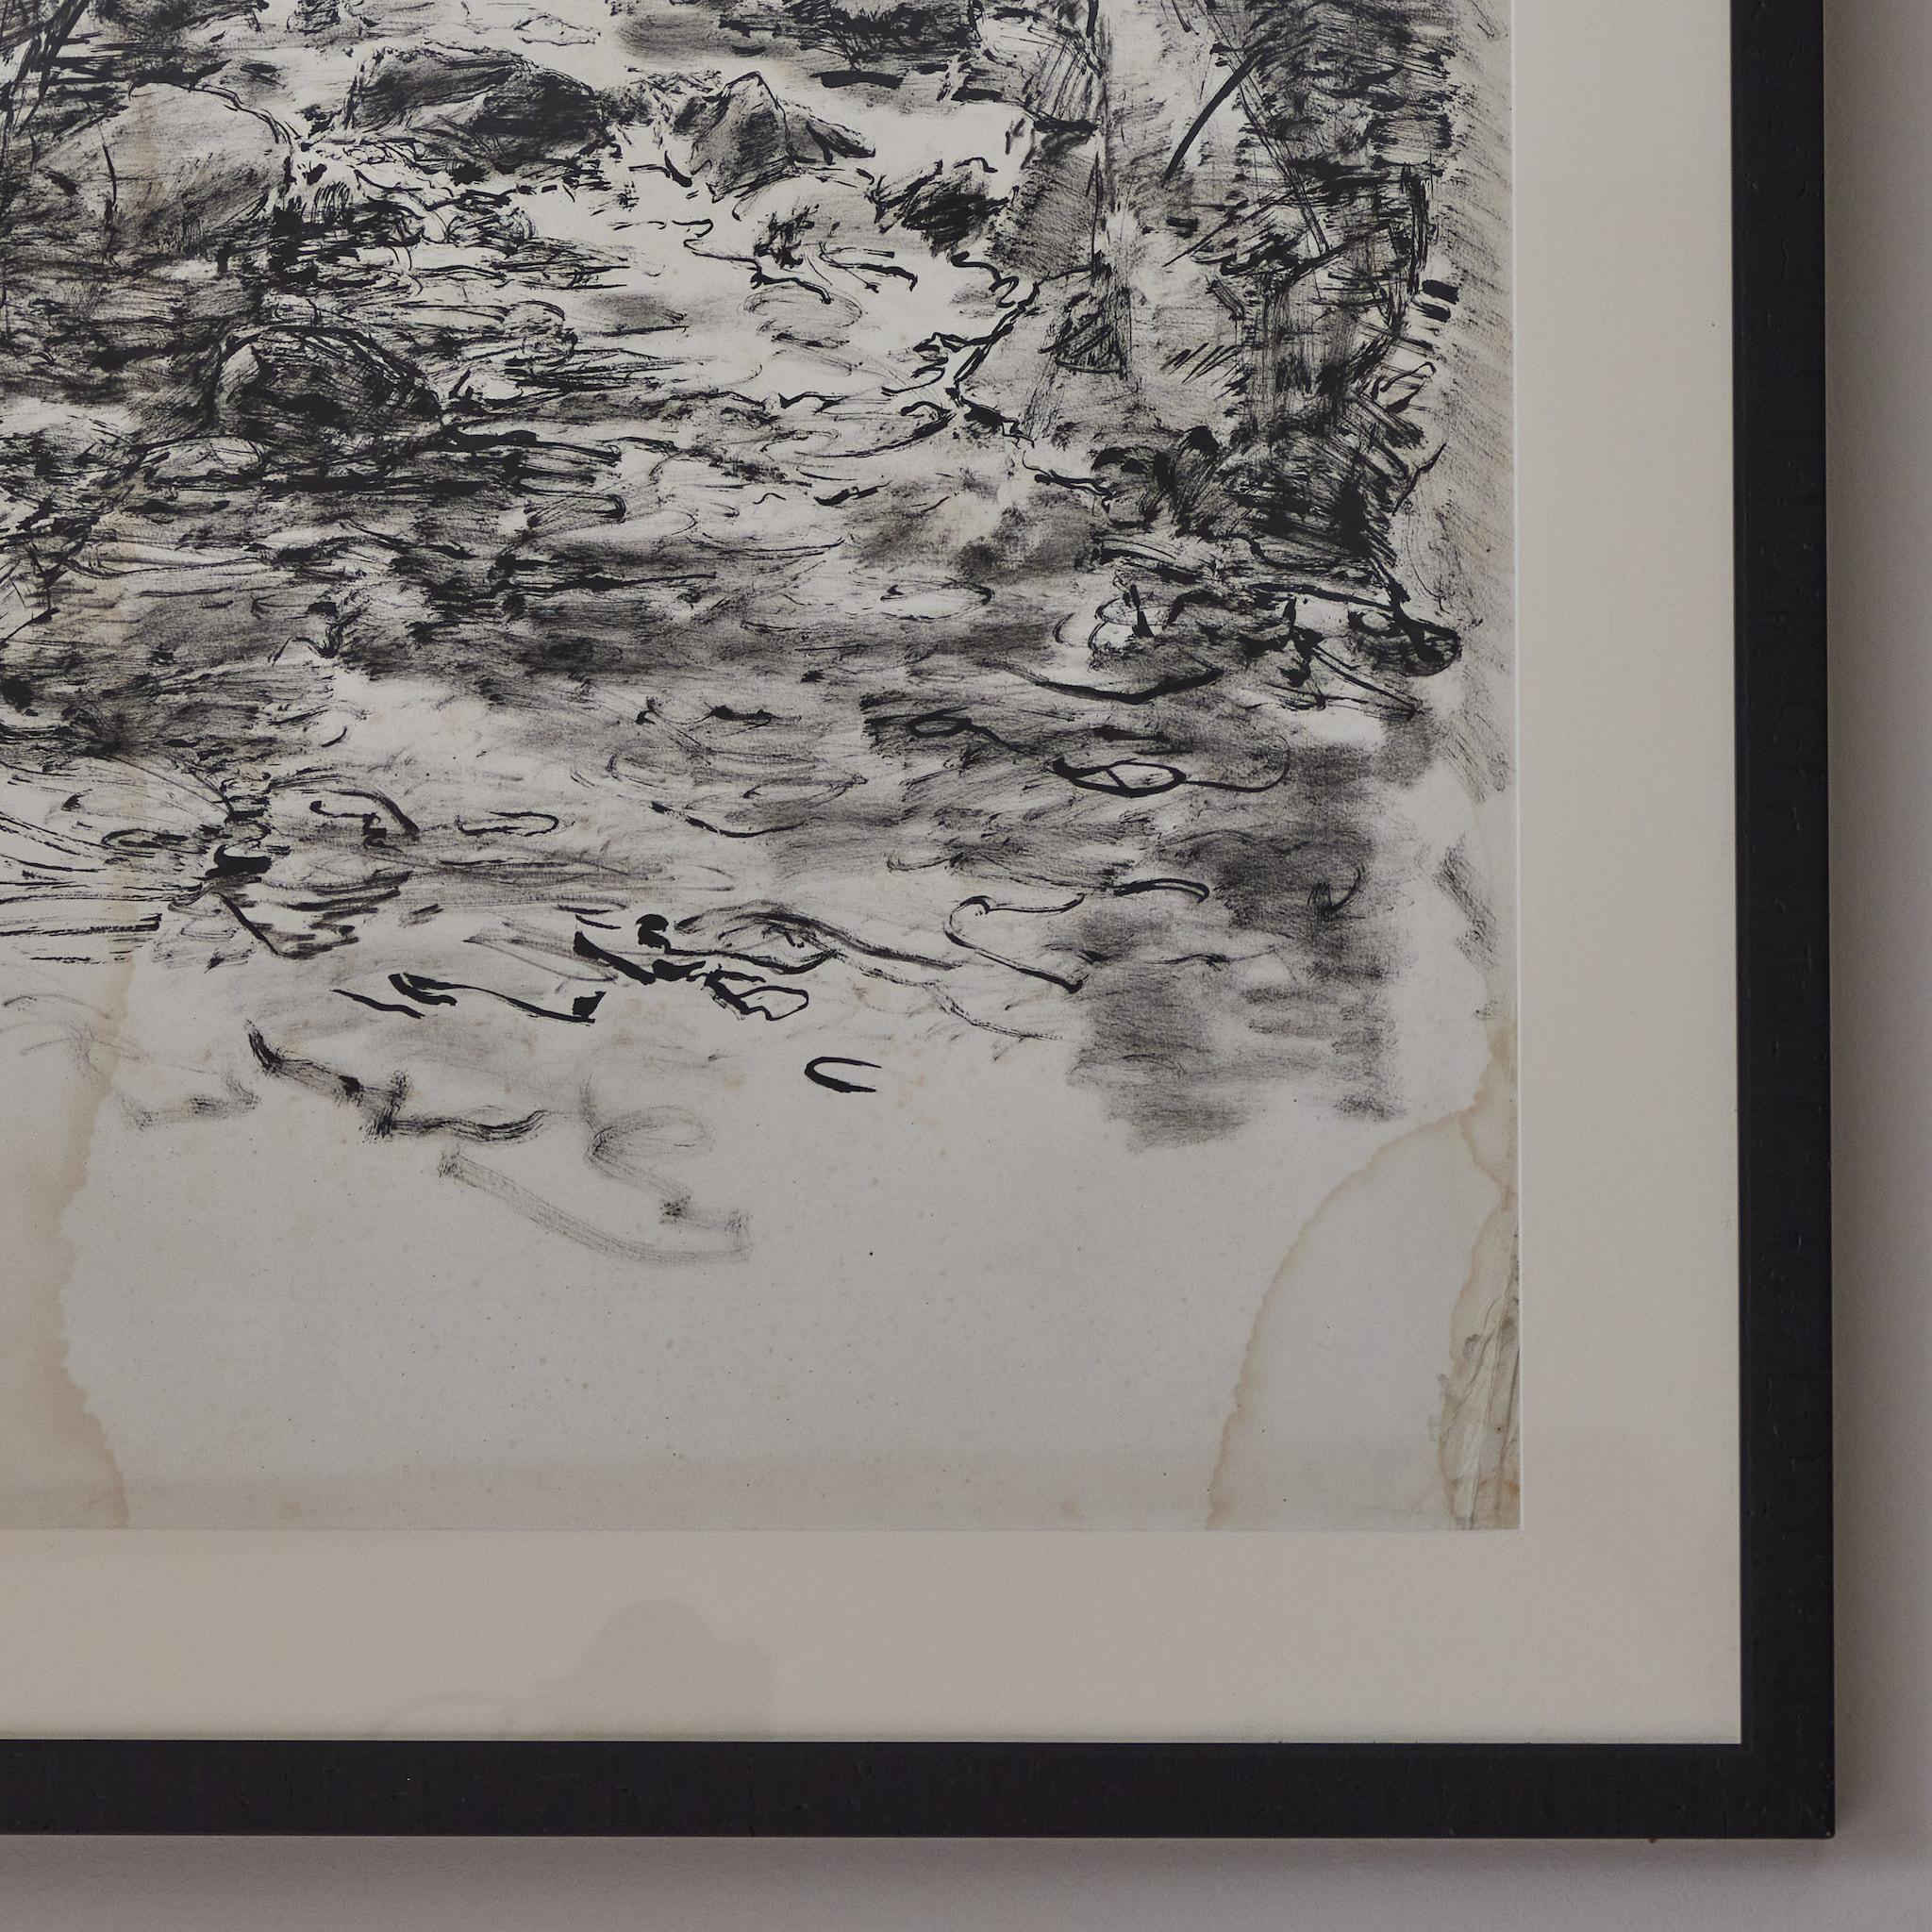 Dessin de paysage post-impressionniste français à l'encre noire sur papier, monté dans un cadre simple en bois noir personnalisé. L'image vibre presque avec  le mouvement et la sérénité. 
